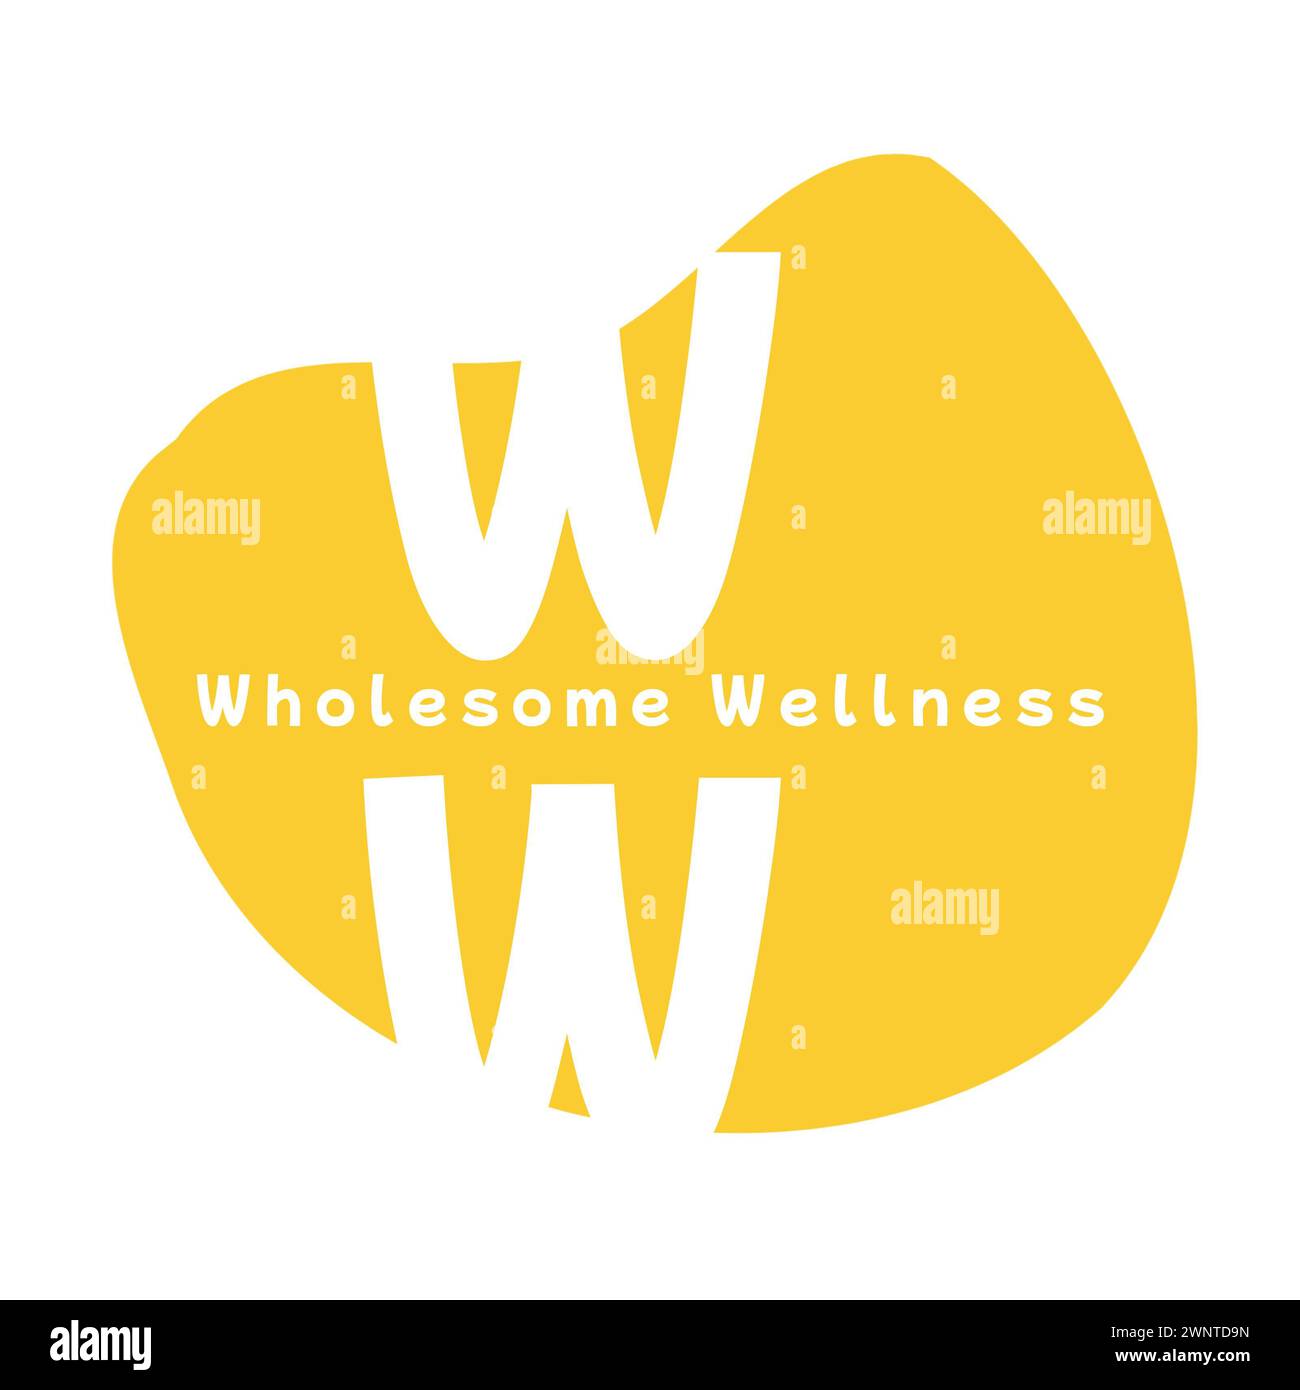 Promuovendo la salute e la positività, l'audace "W" del logo racchiude l'essenza del benessere sano Foto Stock